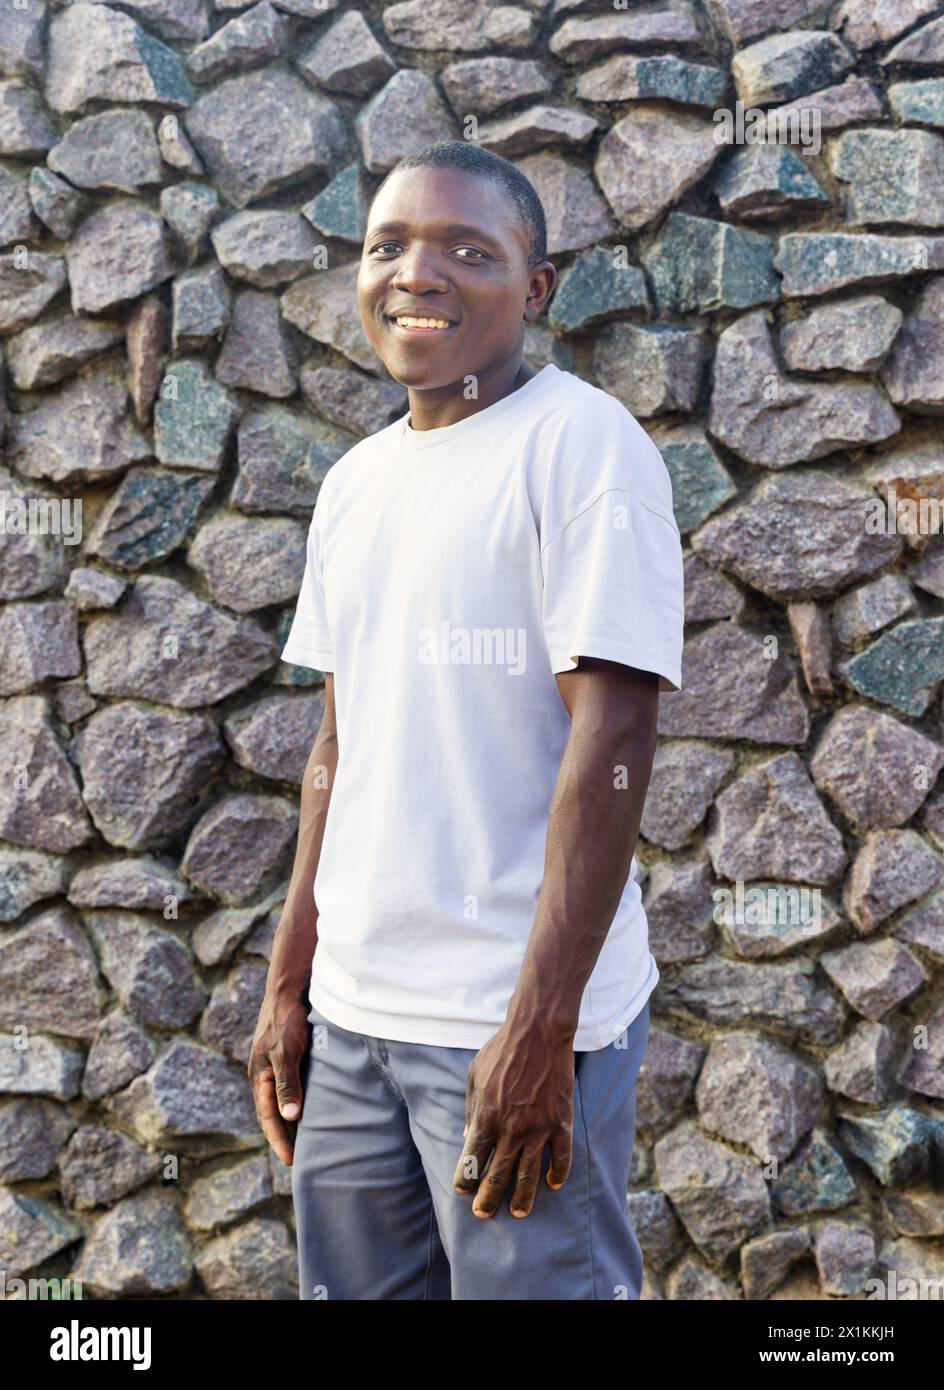 giovane africano con un grande sorriso e t-shirt bianca, abbigliamento casual, sfondo in pietra da parete Foto Stock